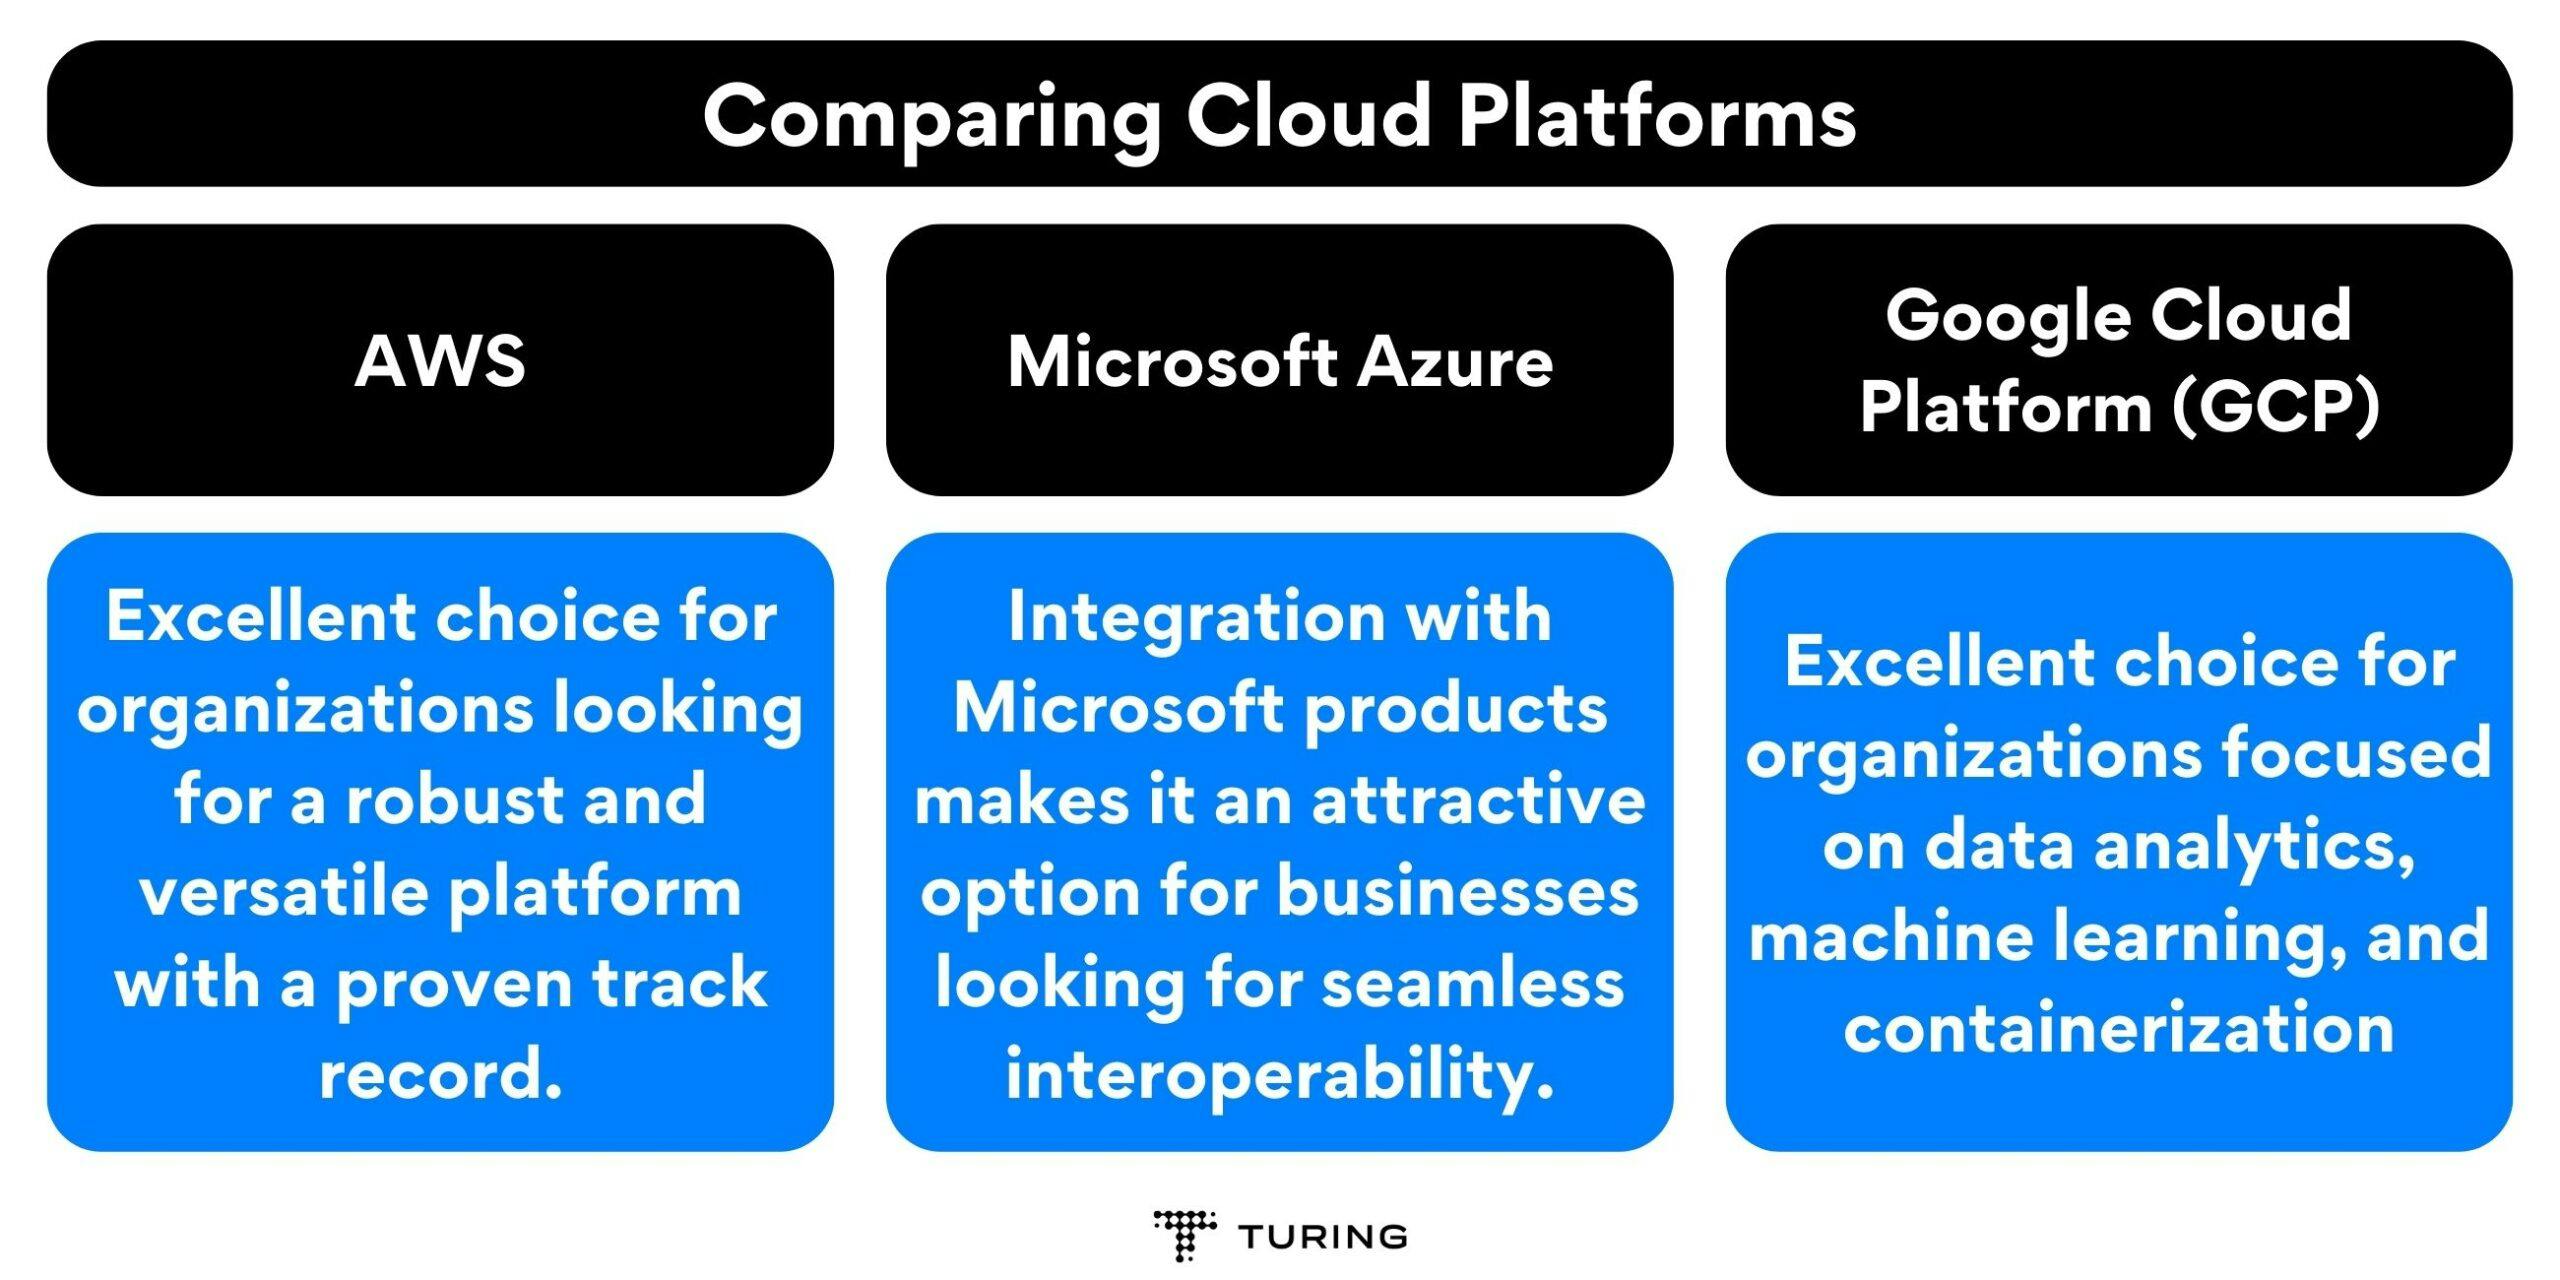 Cloud assessment: Comparing Cloud Platforms